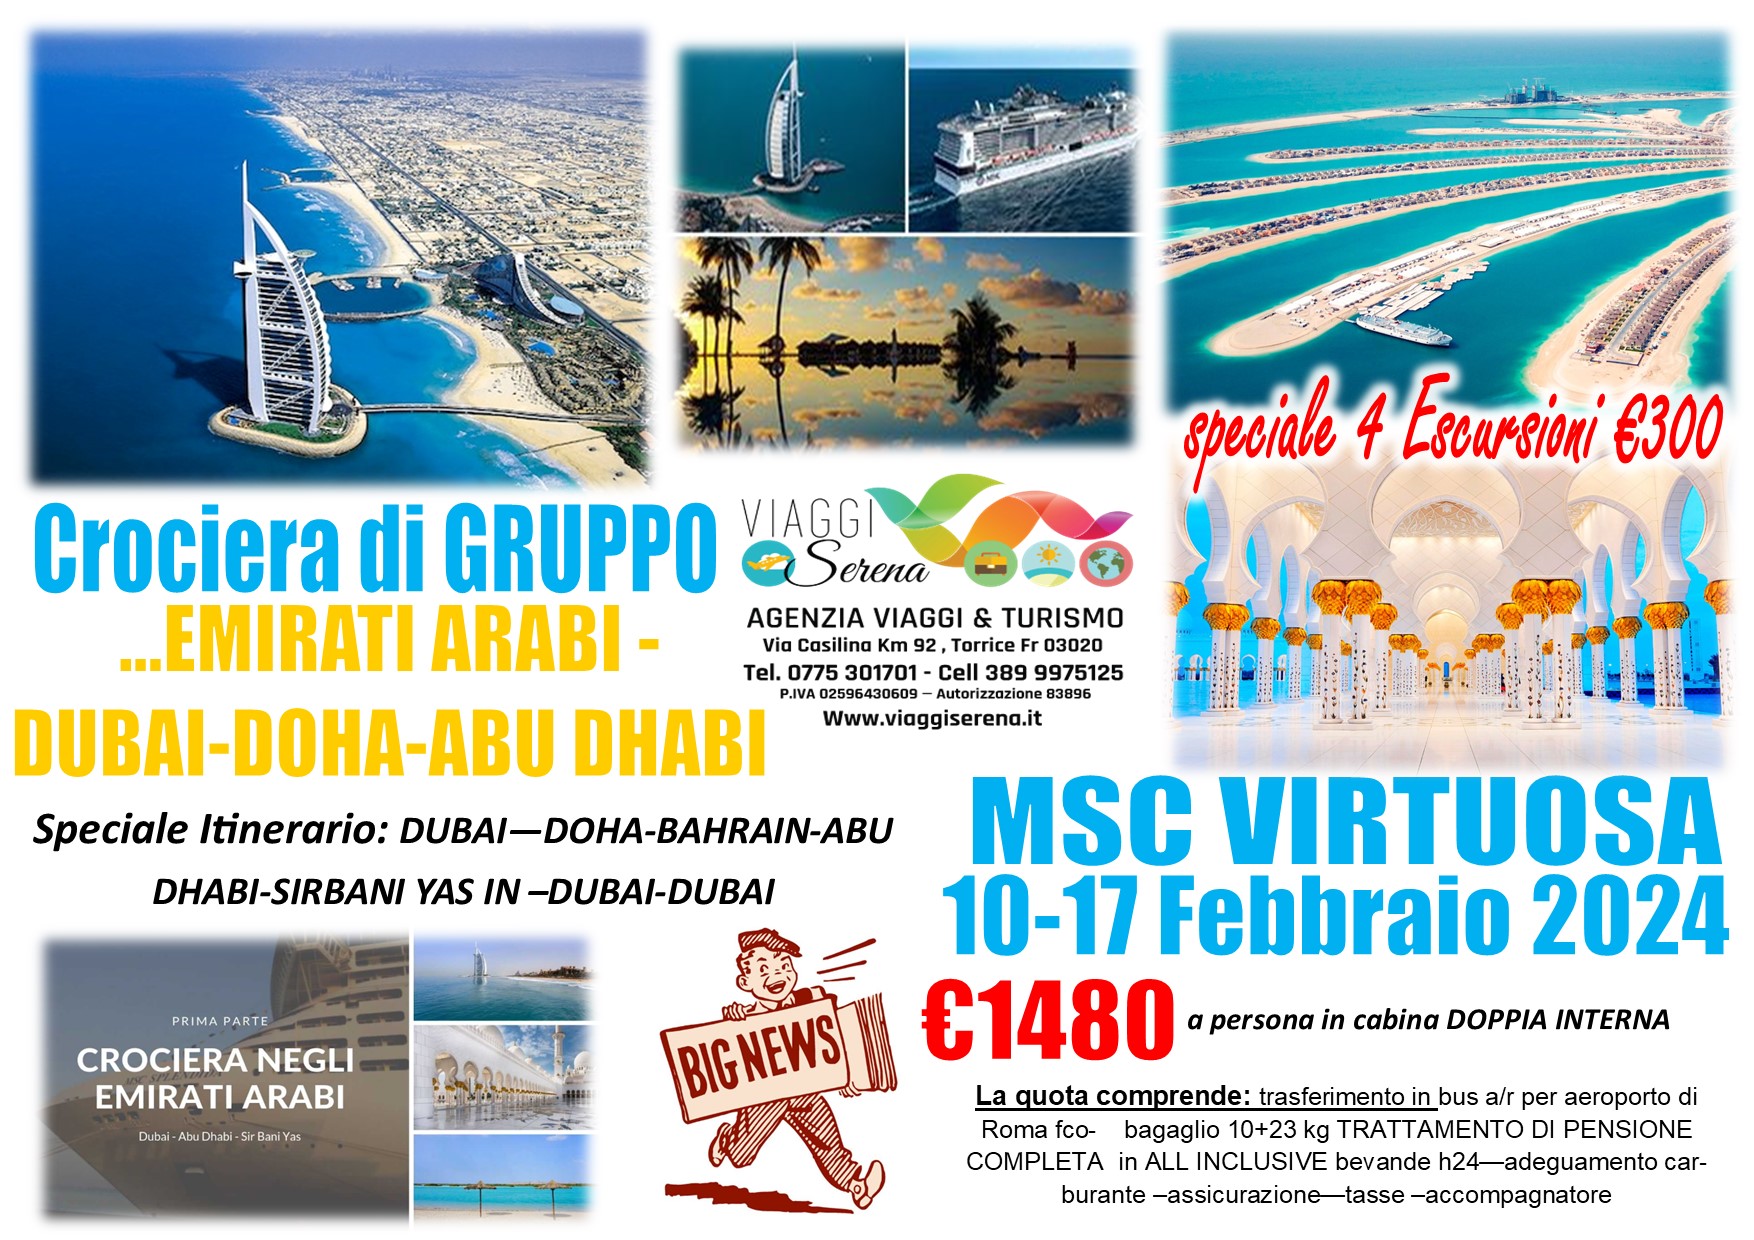 Viaggi di Gruppo: Crociera di Gruppo “Emirati Arabi-Dubai” 10-17 Febbraio € 1480,00